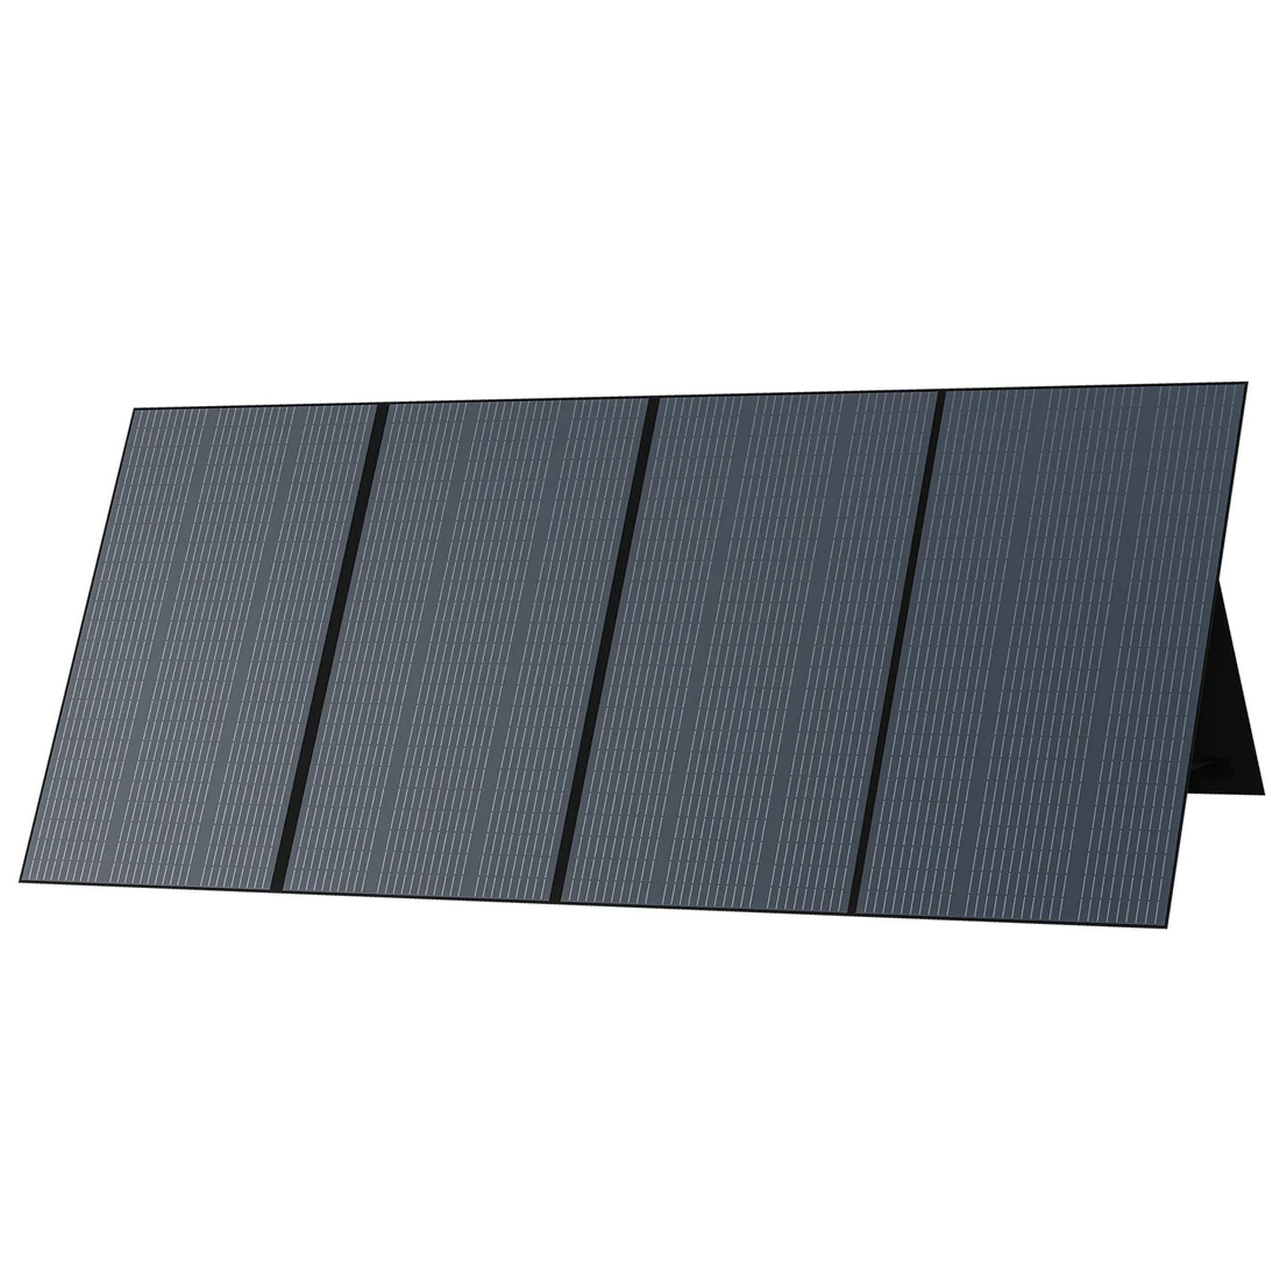 Сонячна панель BLUETTI PV350 Solar Panel | 350W